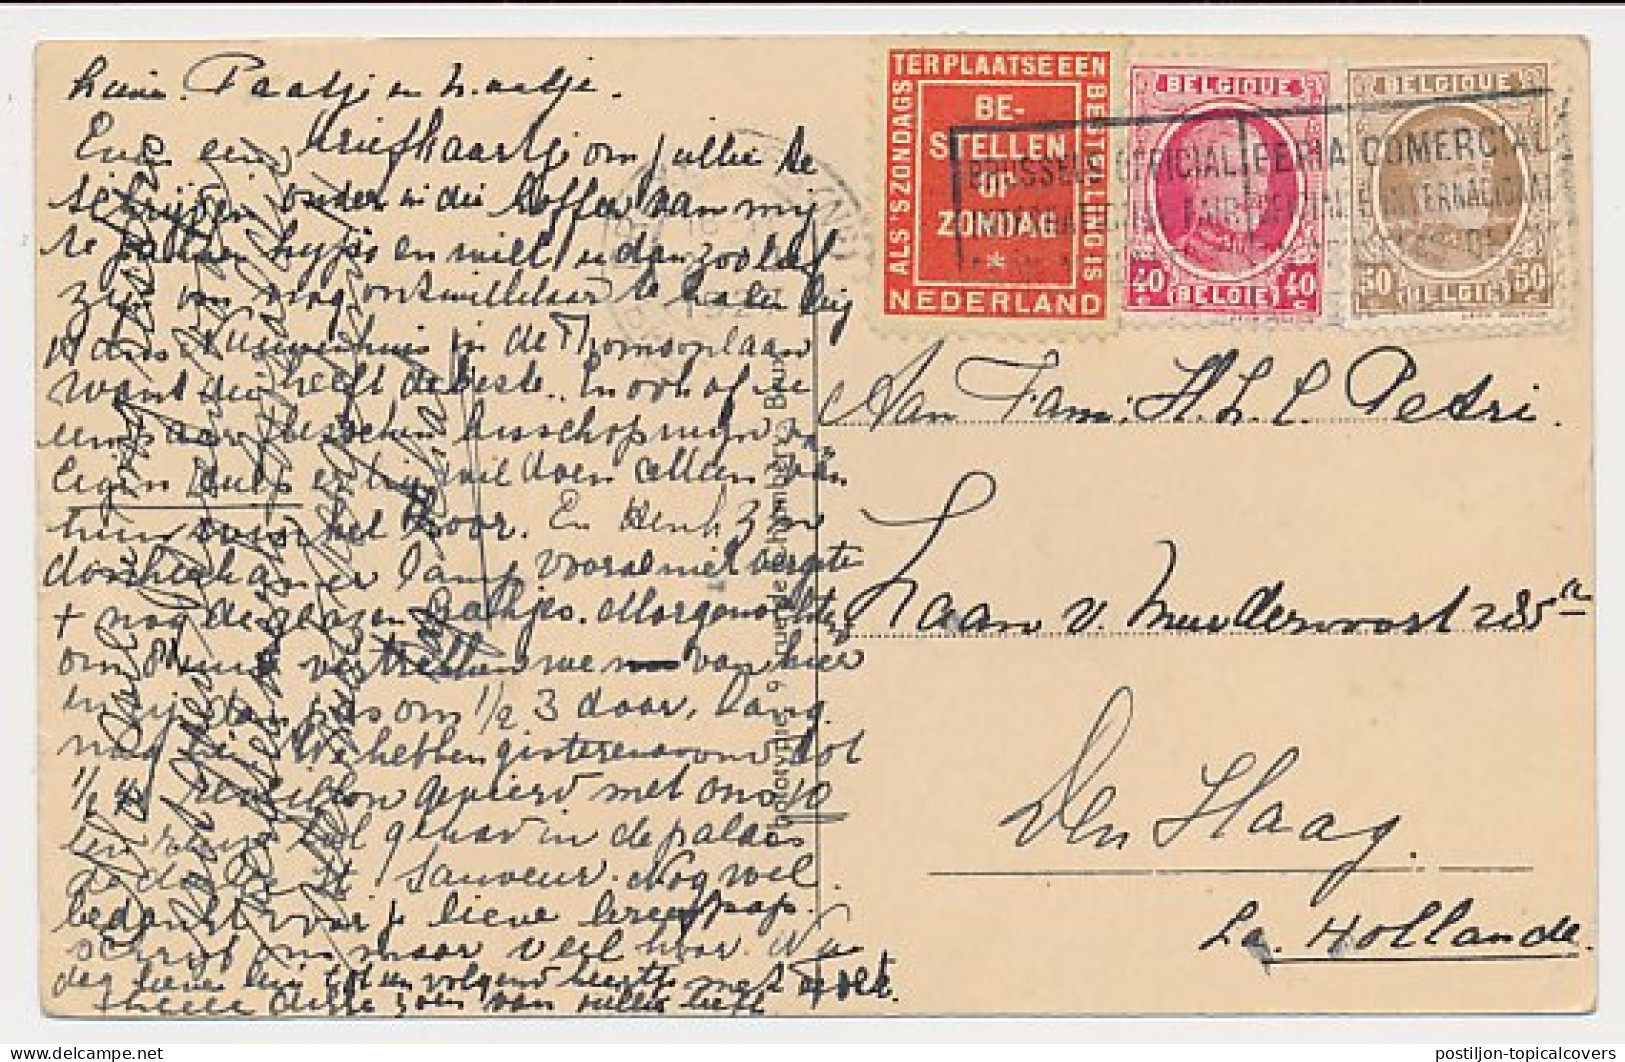 Bestellen Op Zondag - Brussel Belgie - Den Haag 1927 - Briefe U. Dokumente